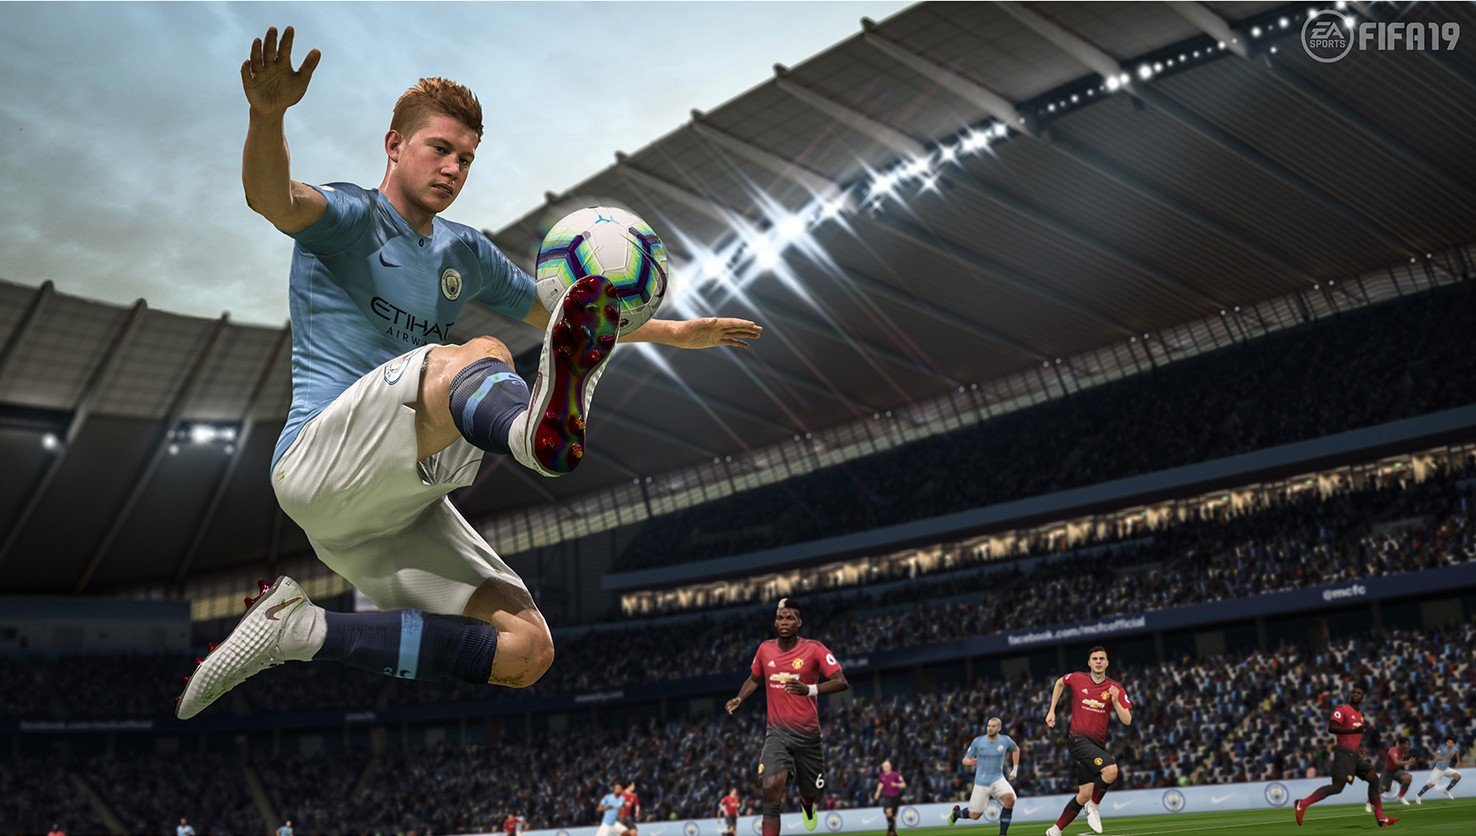 FIFA 19 e PES 2019: Quais são as armas de cada game para